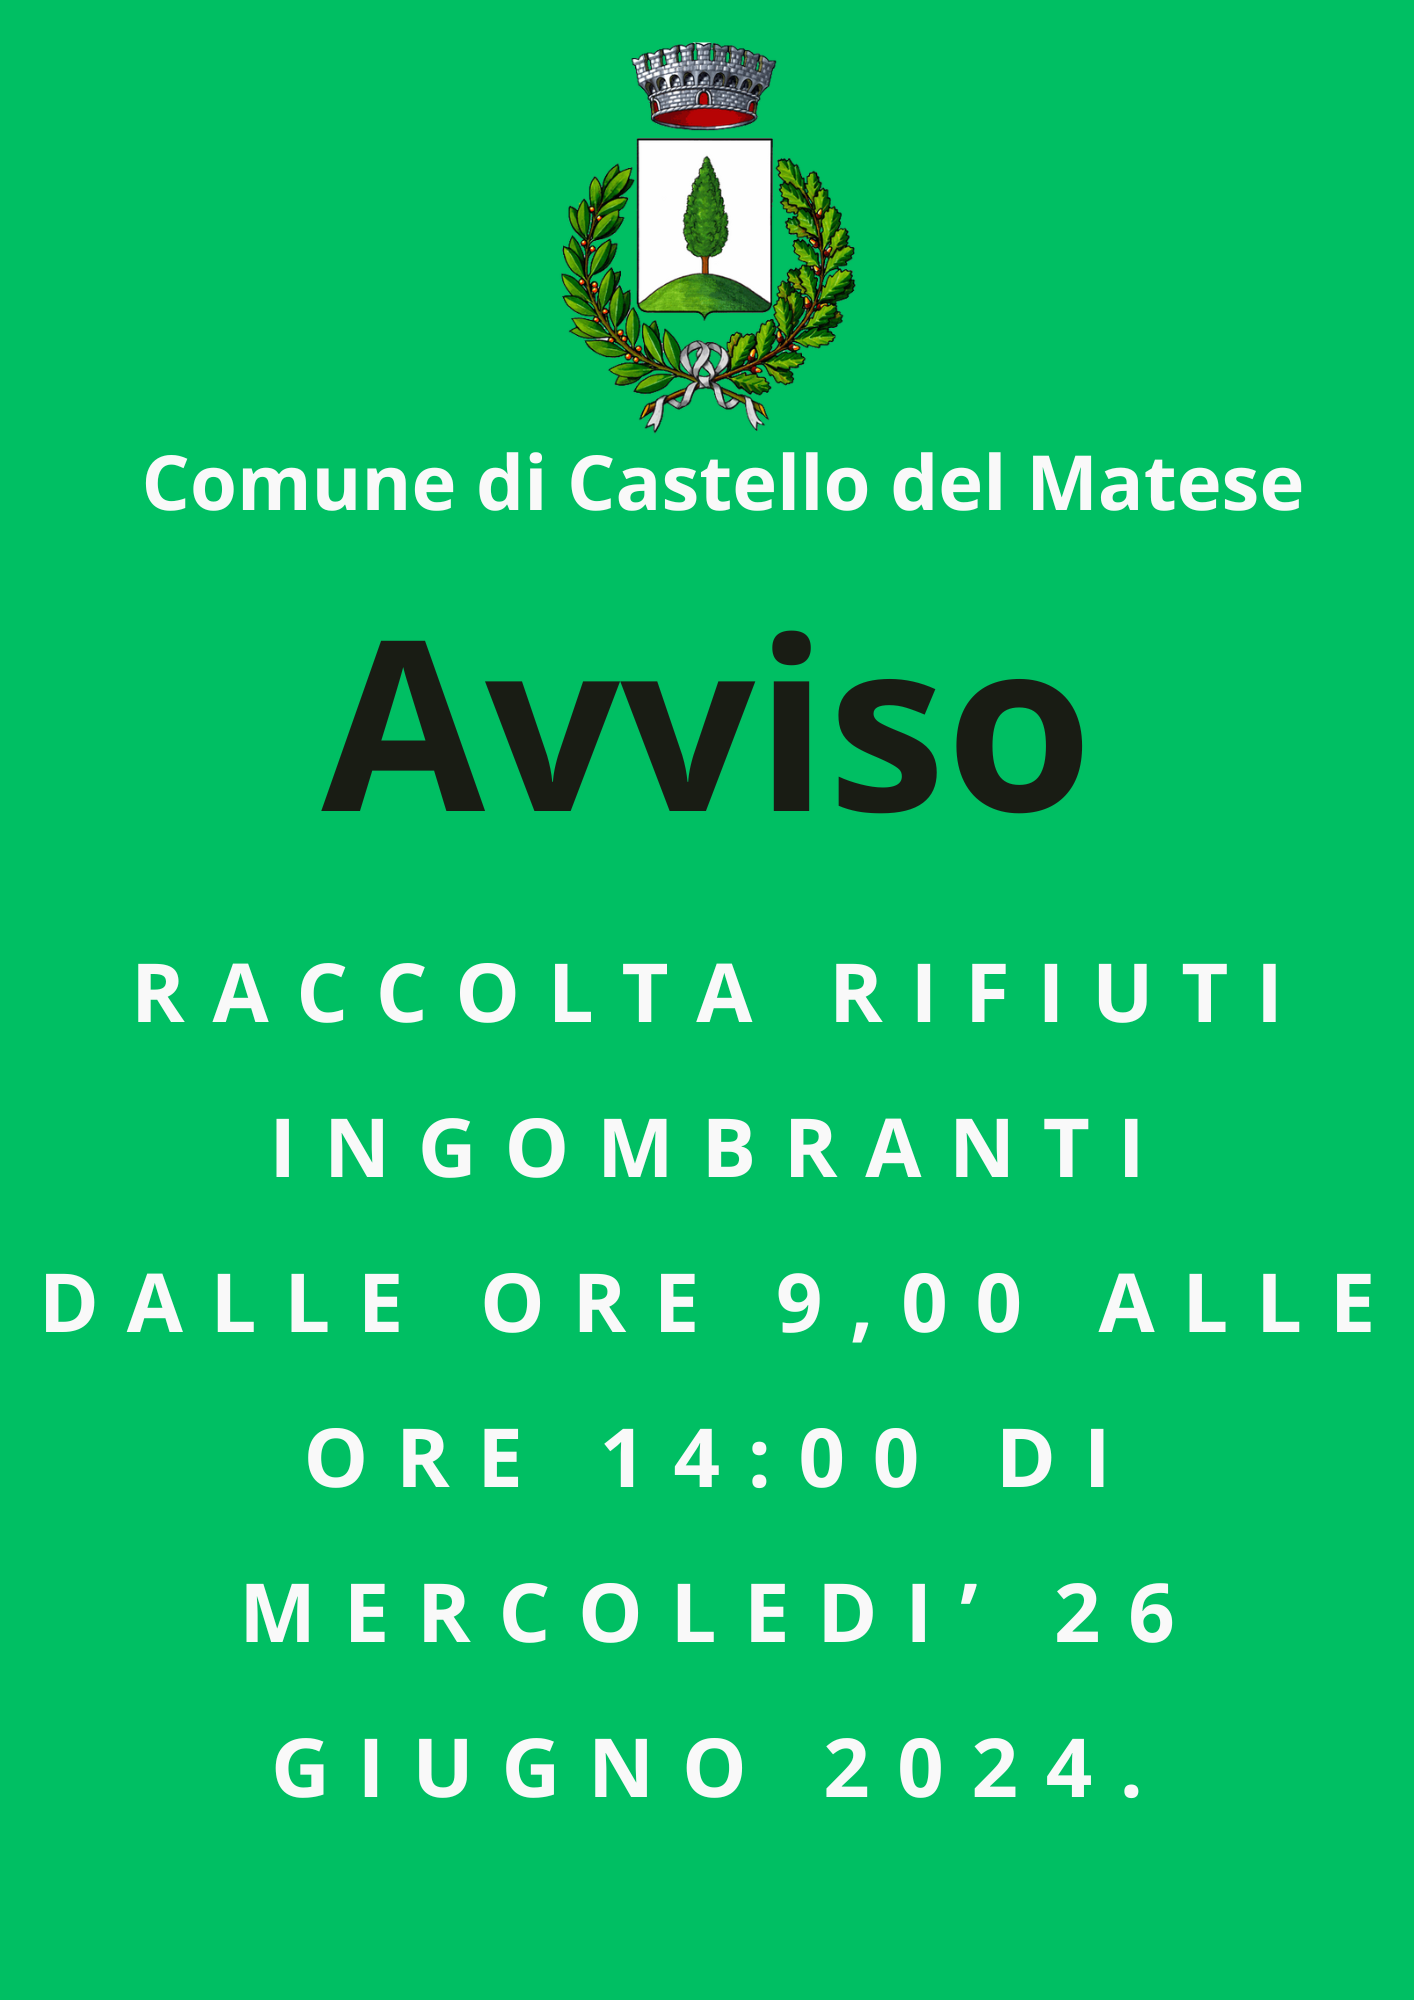 AVVISO - RACCOLTA RIFIUTI INGOMBRANTI DALLE ORE 9,00 ALLE ORE 14:00 DI MERCOLEDI’ 26 GIUGNO 2024.